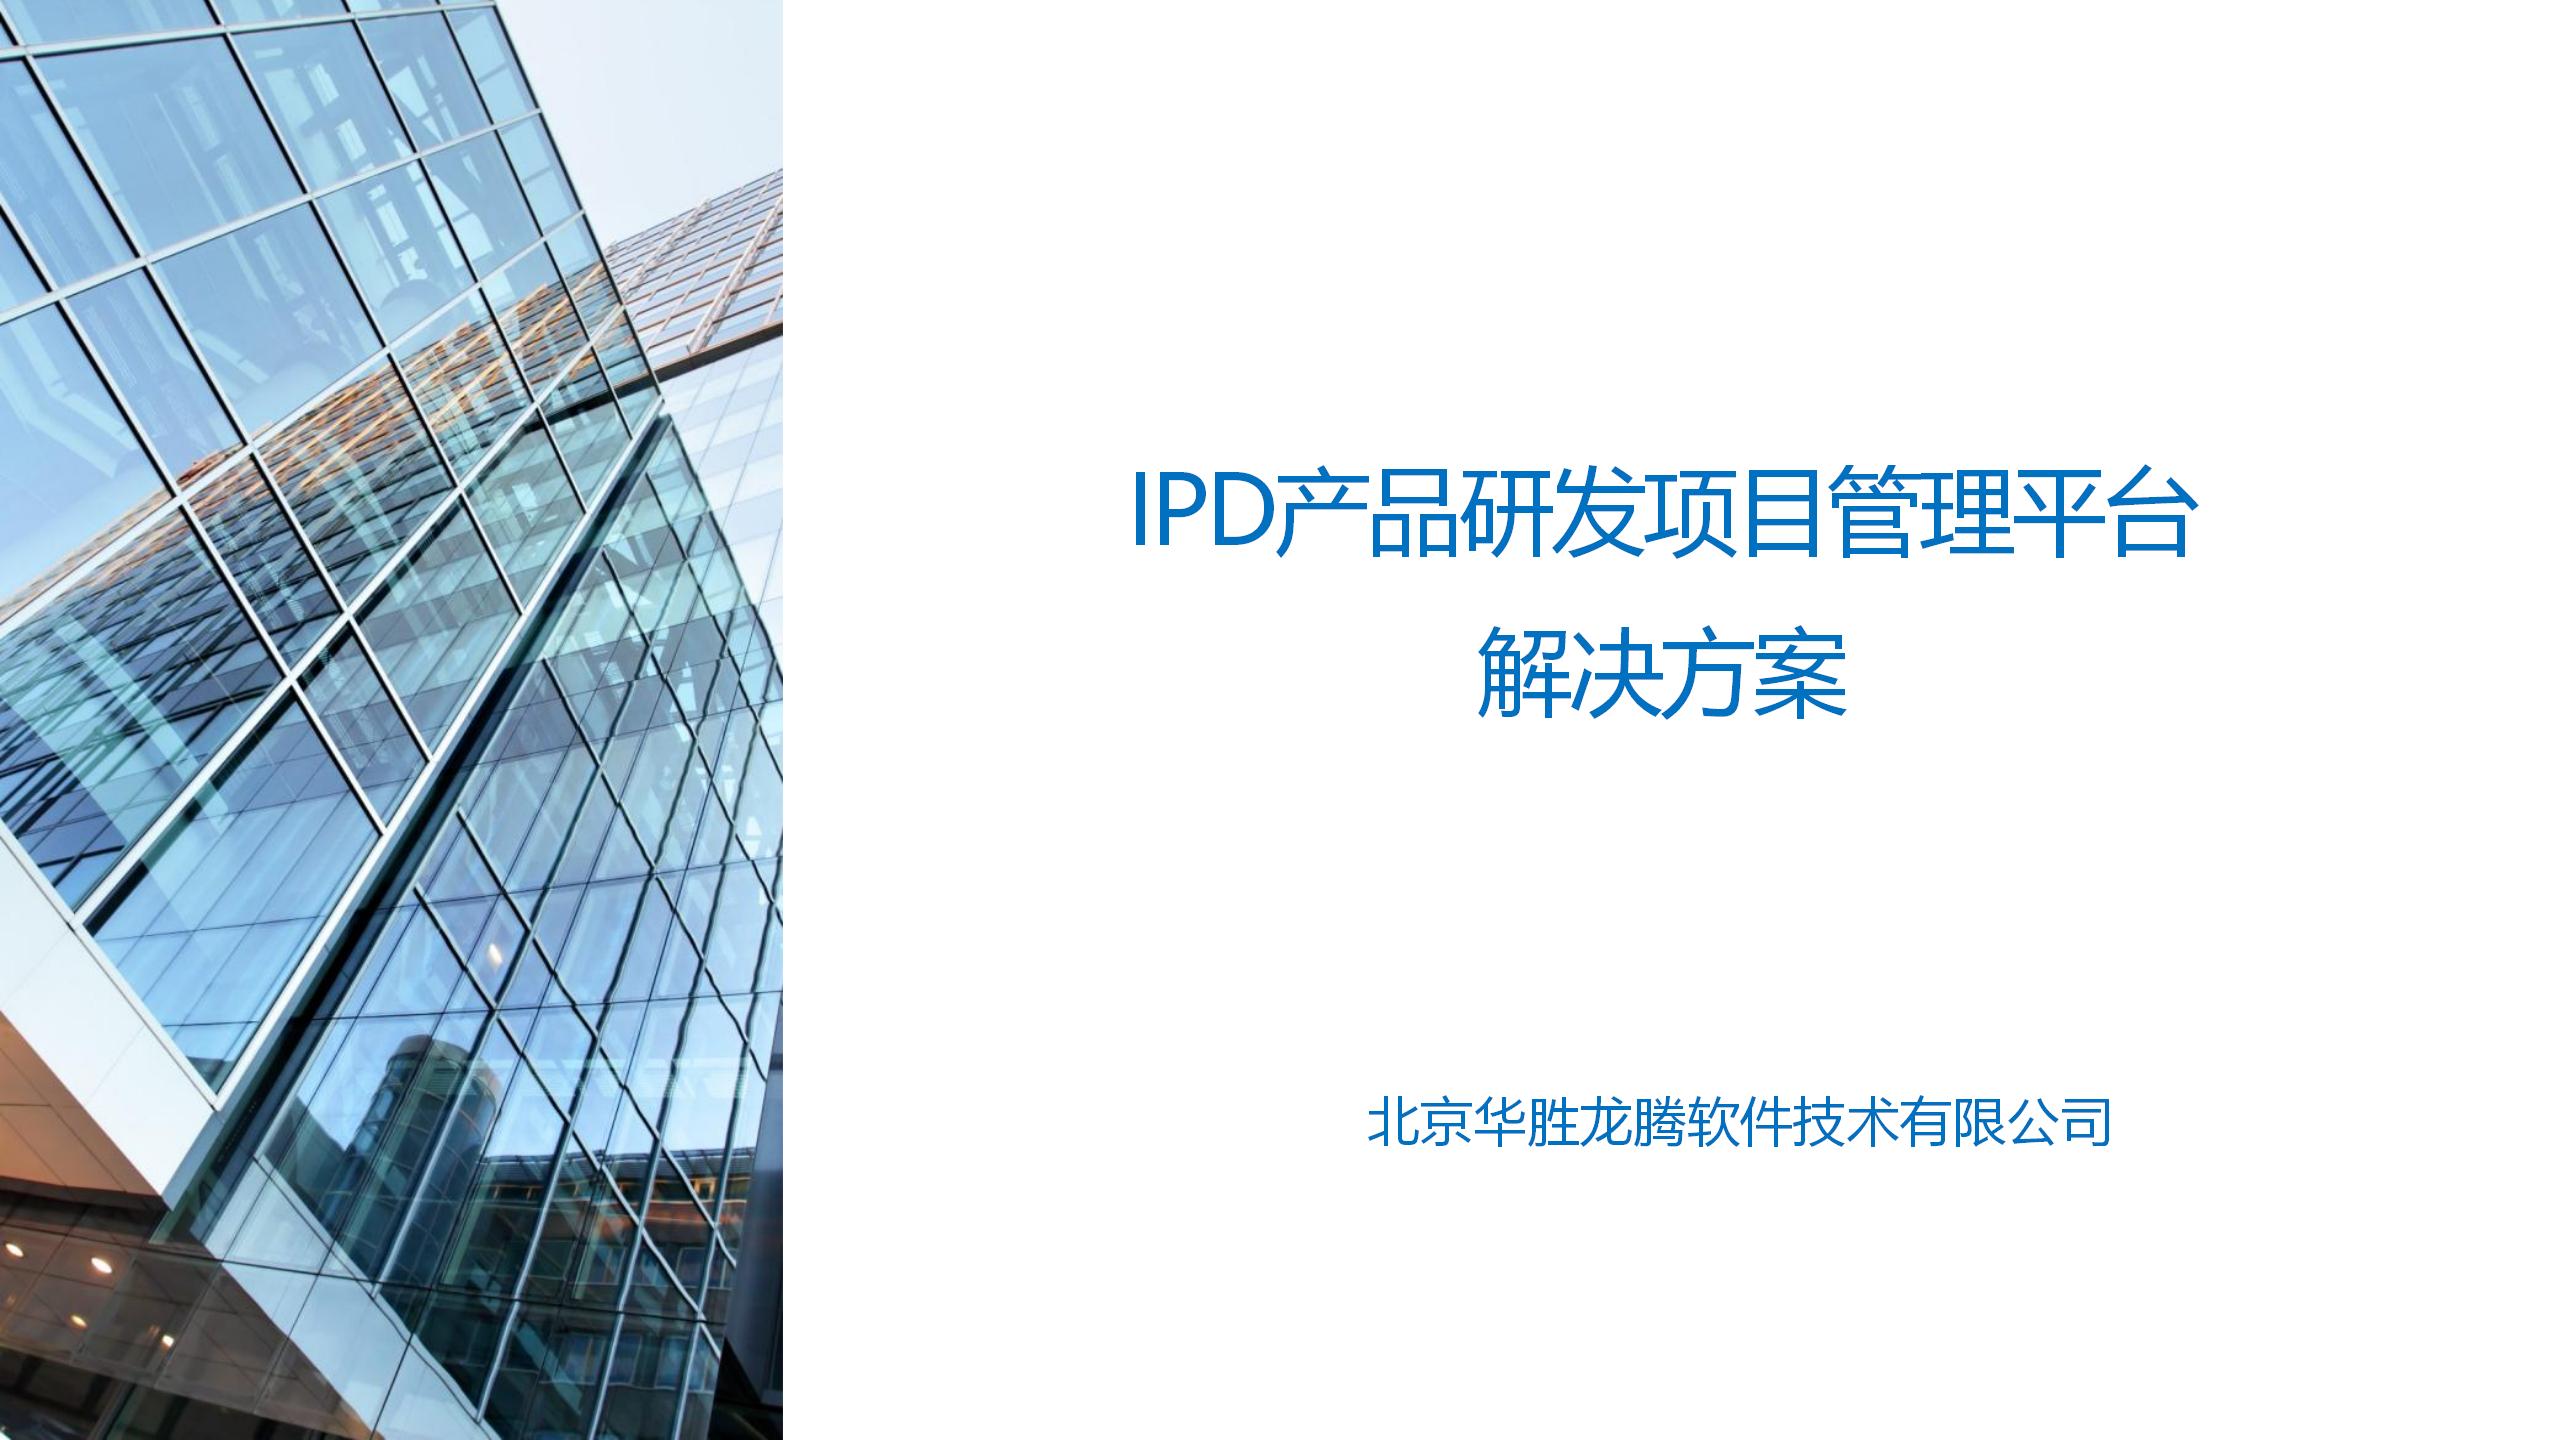 【研发管理】IPD研发全过程项目管理平台解决方案